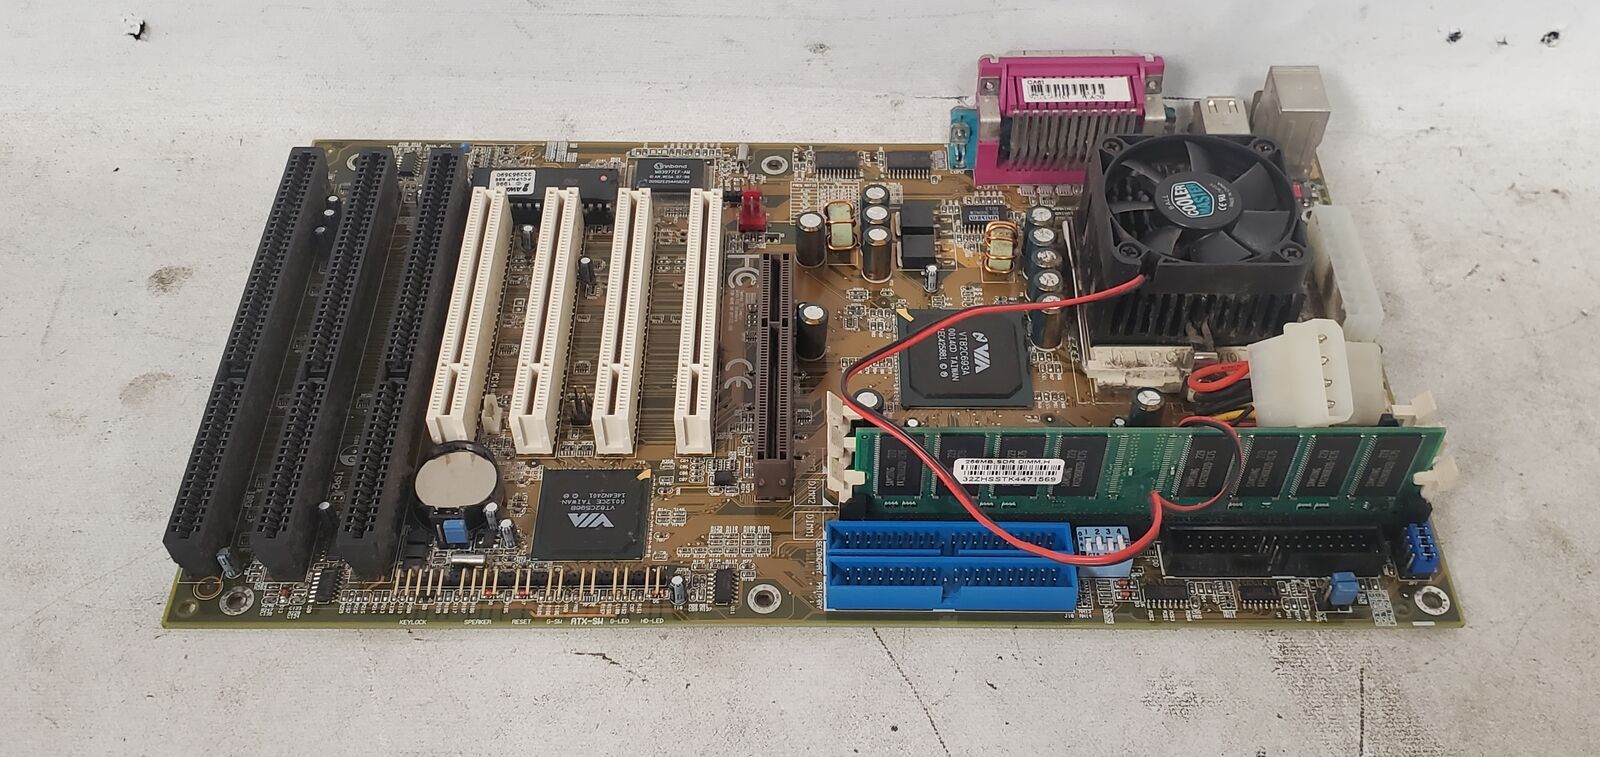 Vintage Gaming DFI CA61 370 ATX Motherboard Intel Pentium III 866MHz 256MB